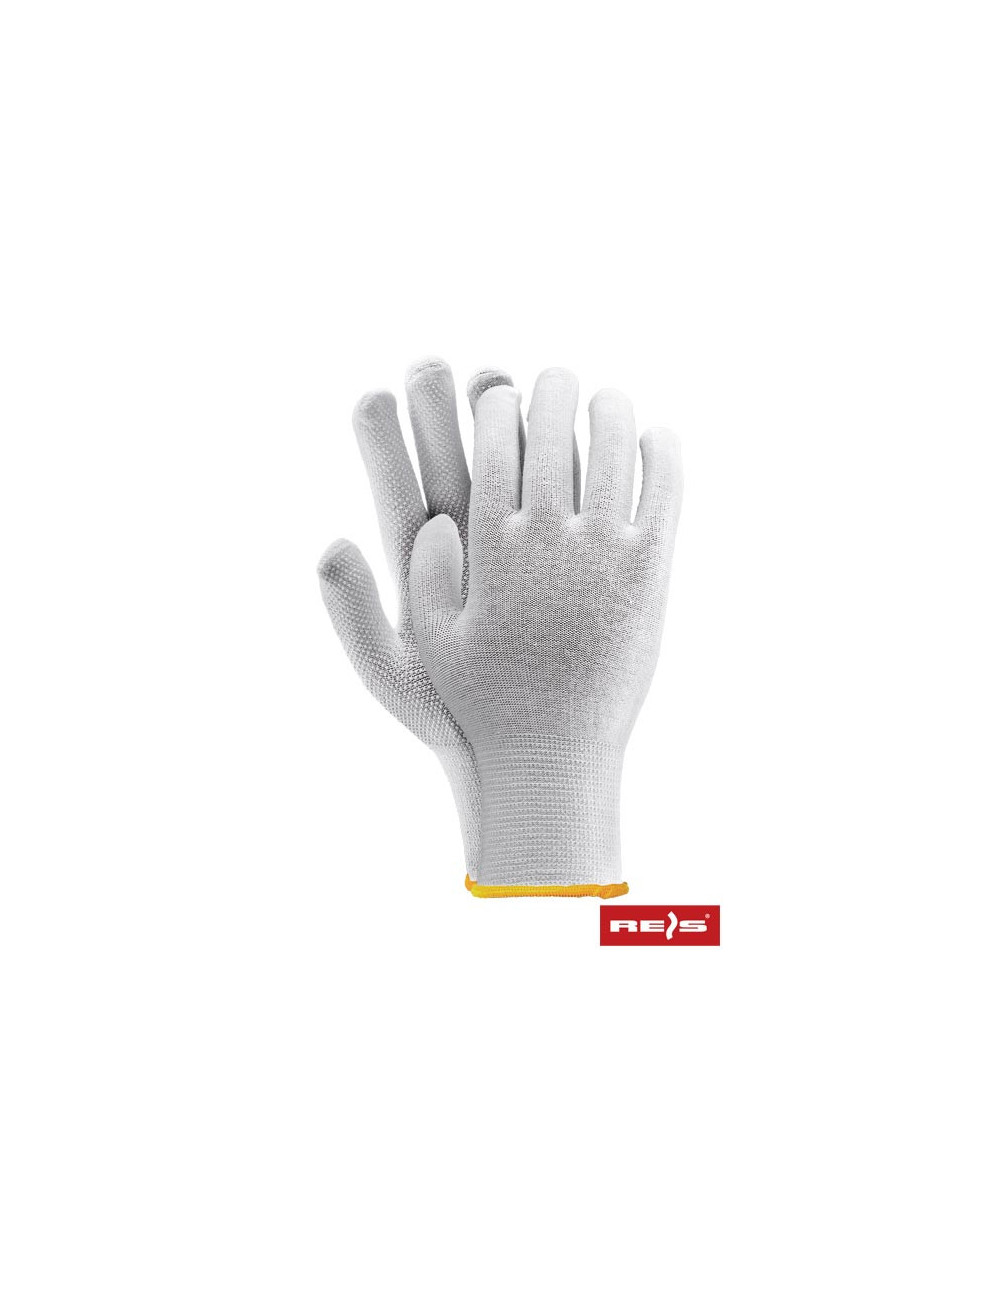 Protective gloves rmicrolux w white Reis